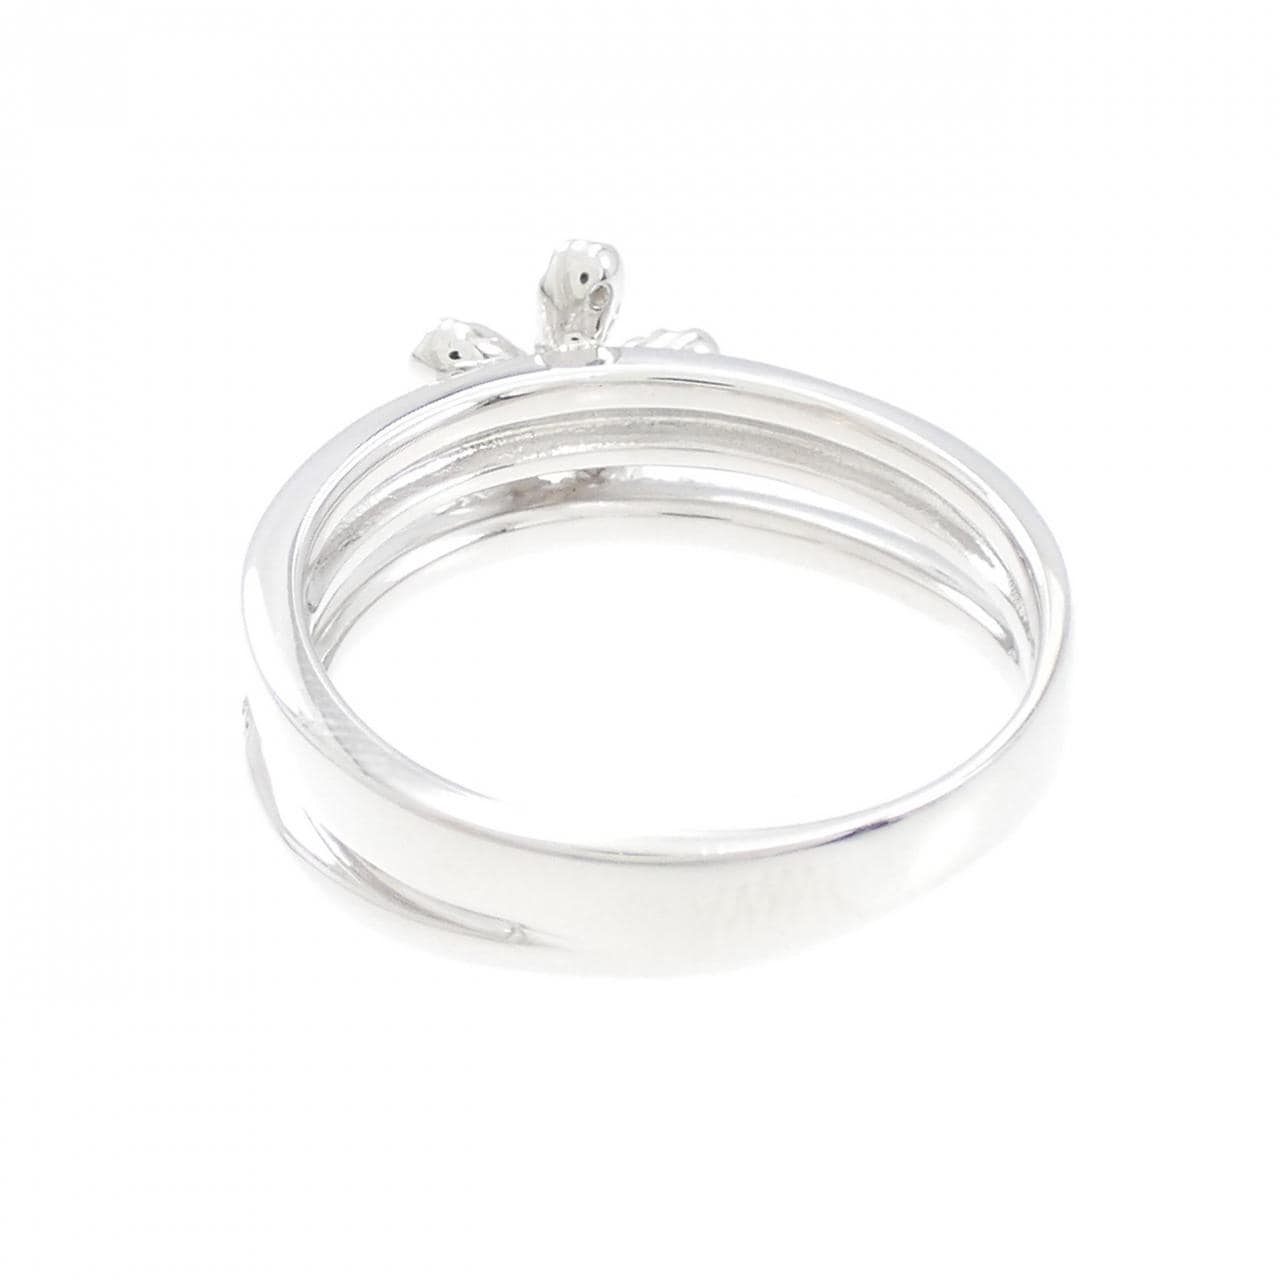 K18WG flower Diamond ring 0.16CT